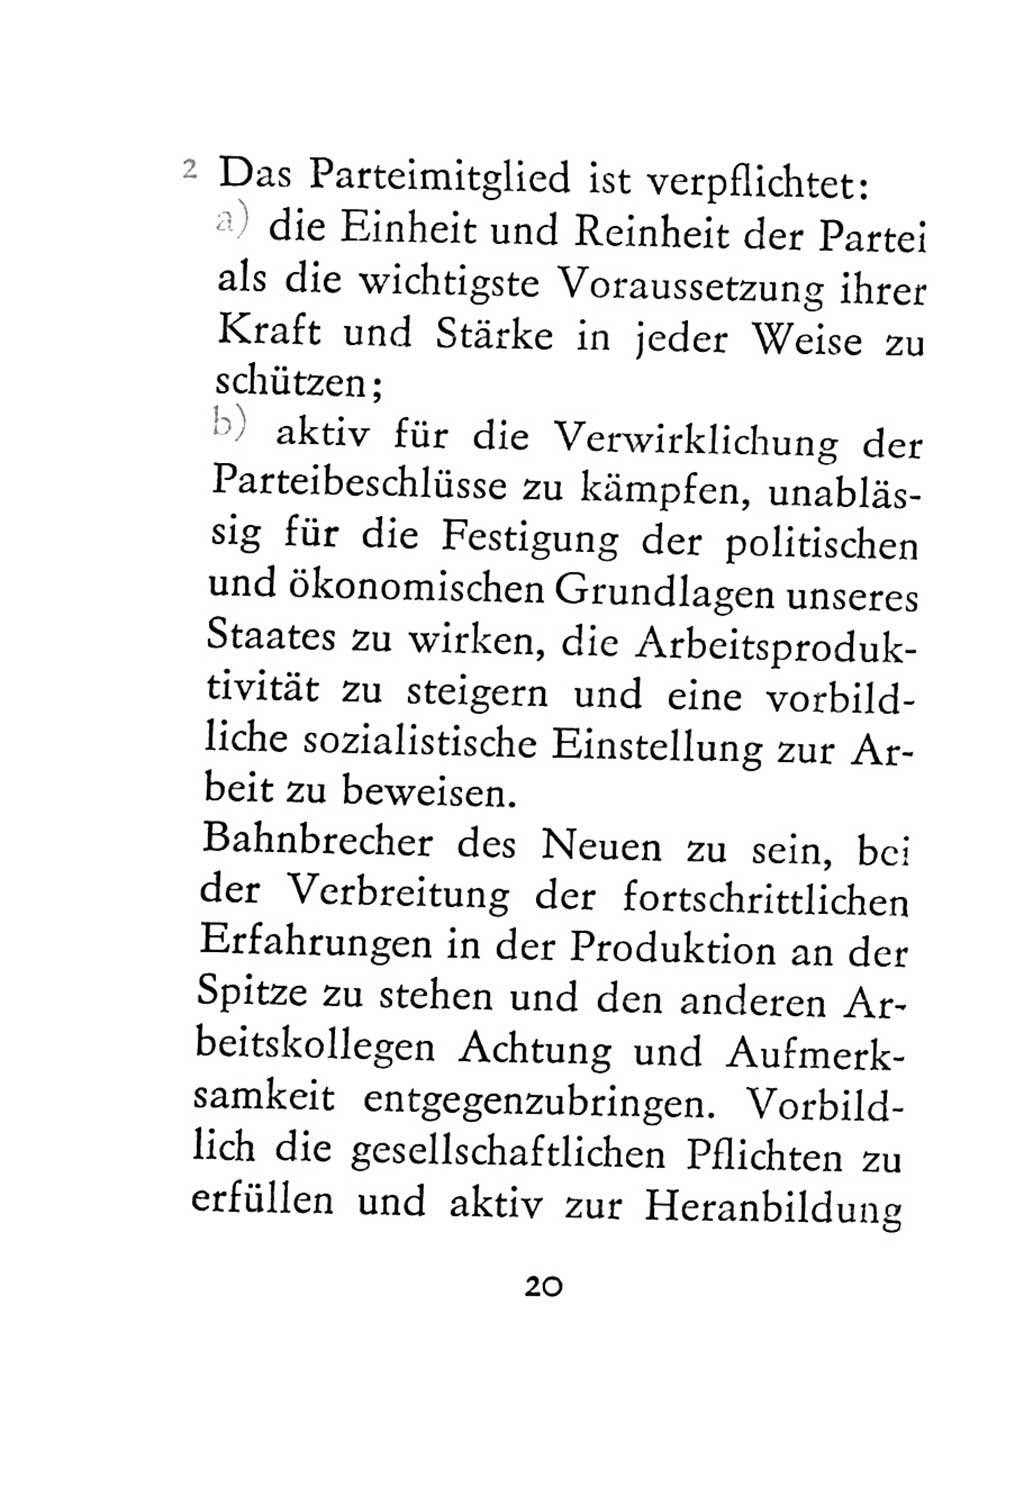 Statut der Sozialistischen Einheitspartei Deutschlands (SED) 1967, Seite 20 (St. SED DDR 1967, S. 20)